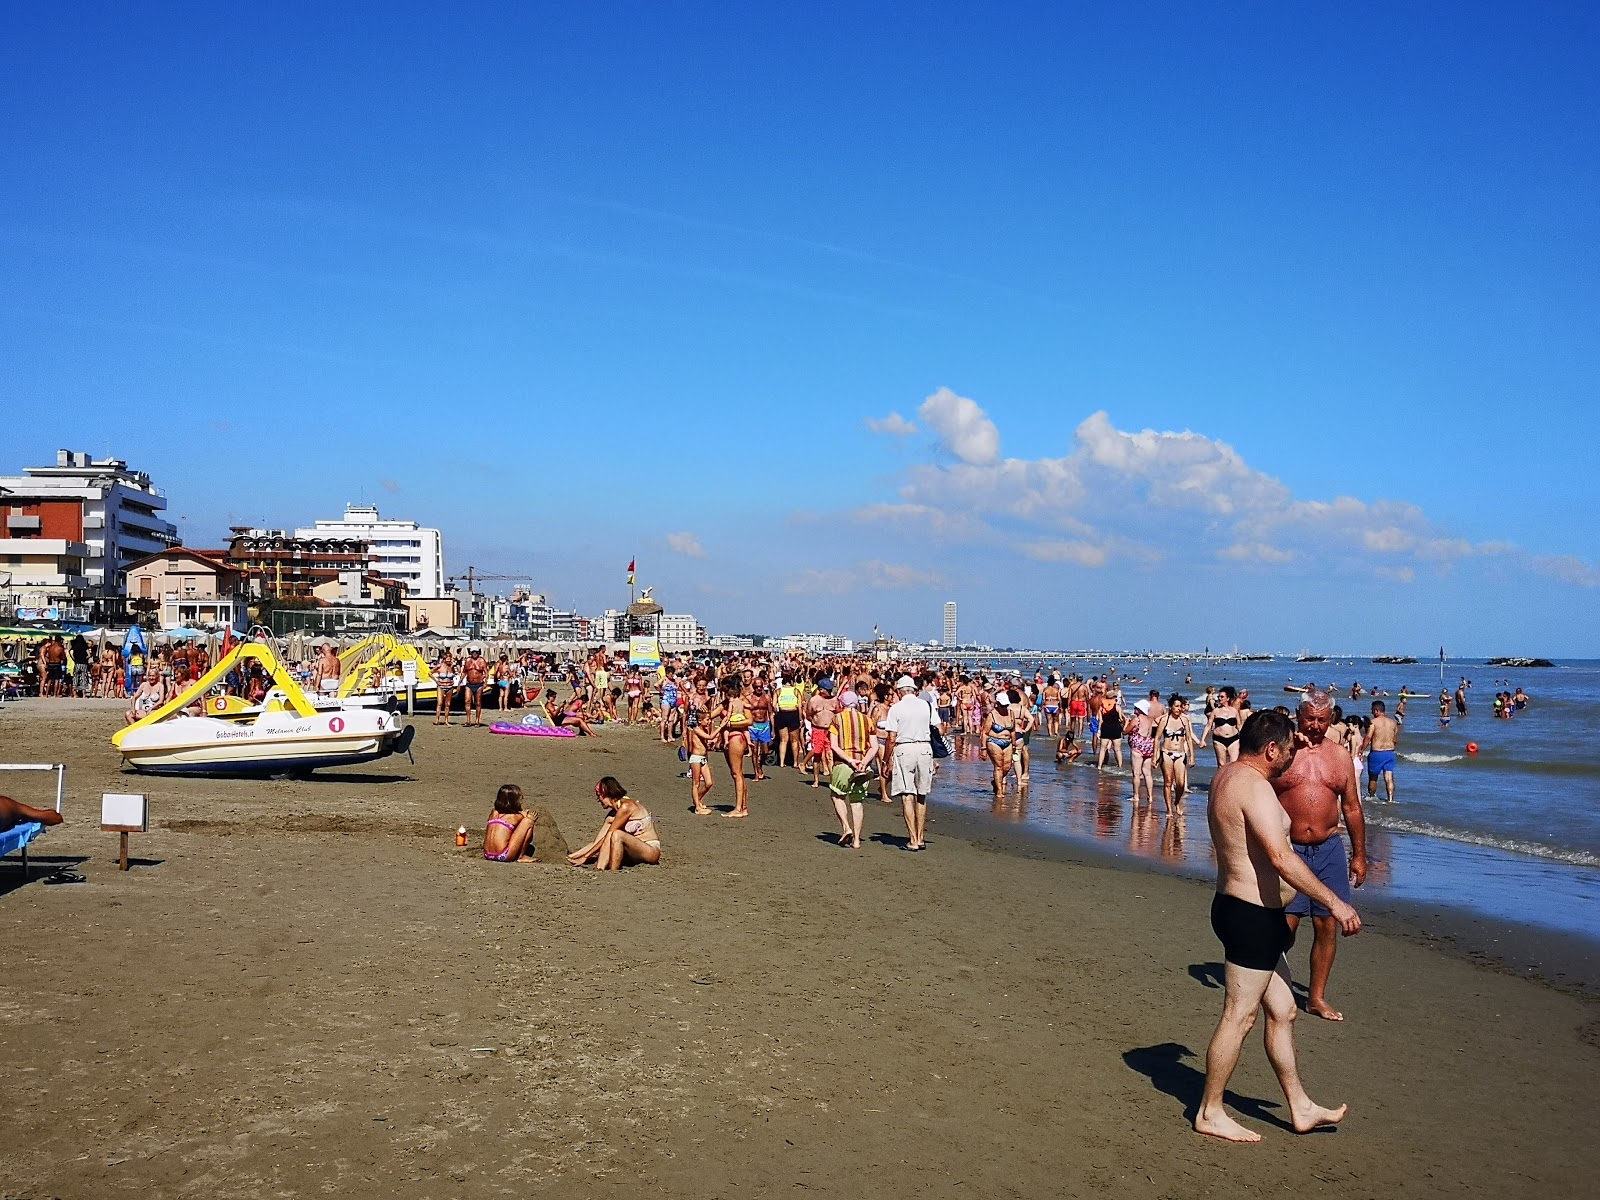 Foto av Spiaggia di Gatteo Mare med hög nivå av renlighet